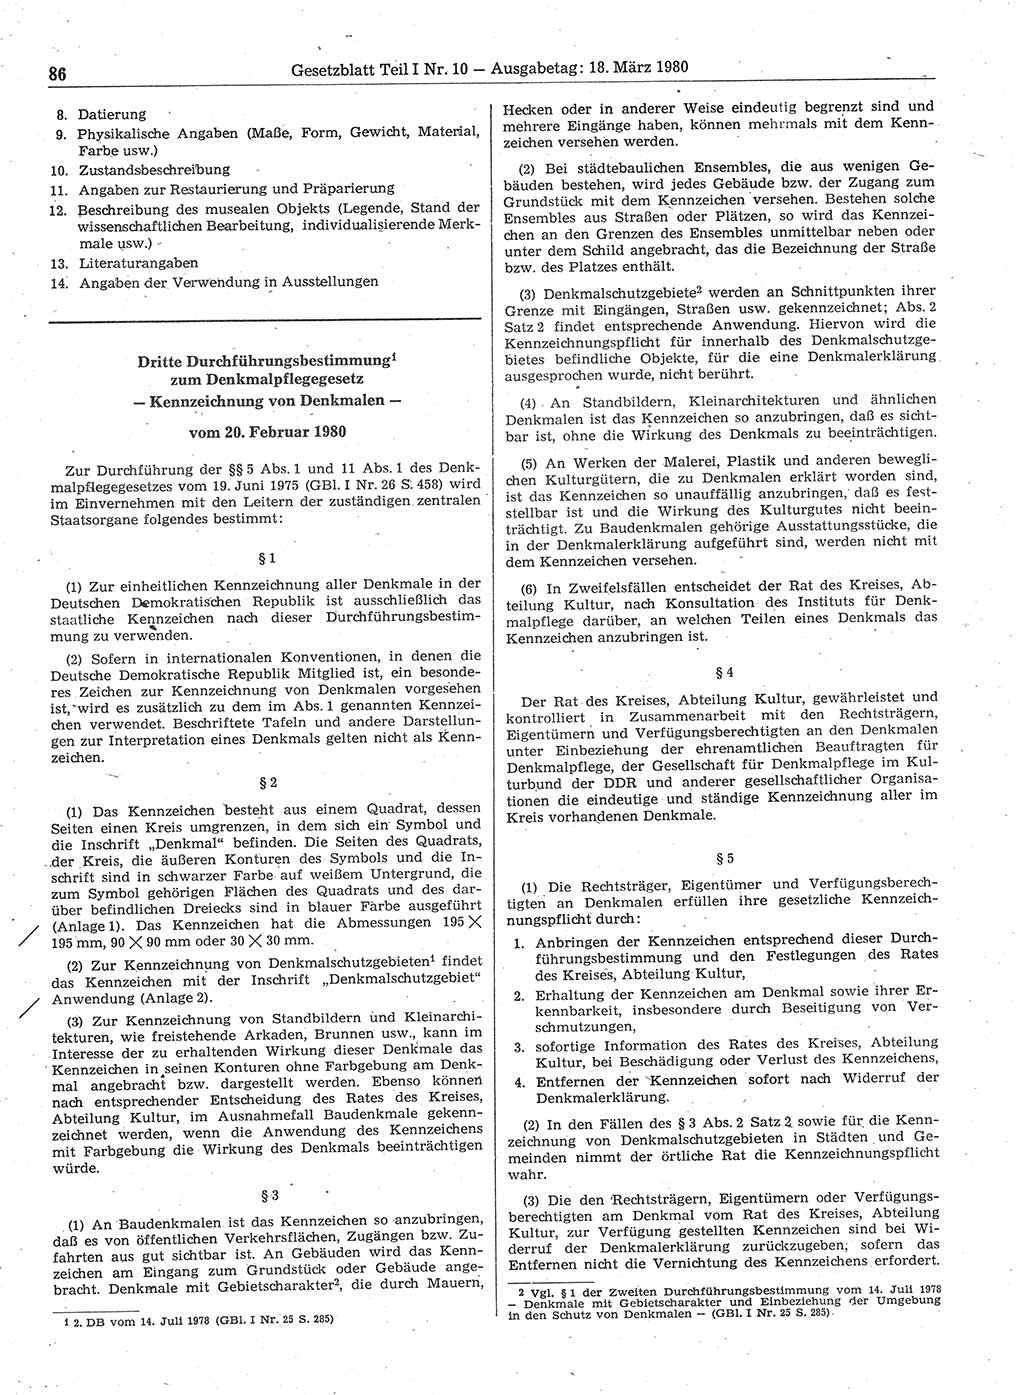 Gesetzblatt (GBl.) der Deutschen Demokratischen Republik (DDR) Teil Ⅰ 1980, Seite 86 (GBl. DDR Ⅰ 1980, S. 86)